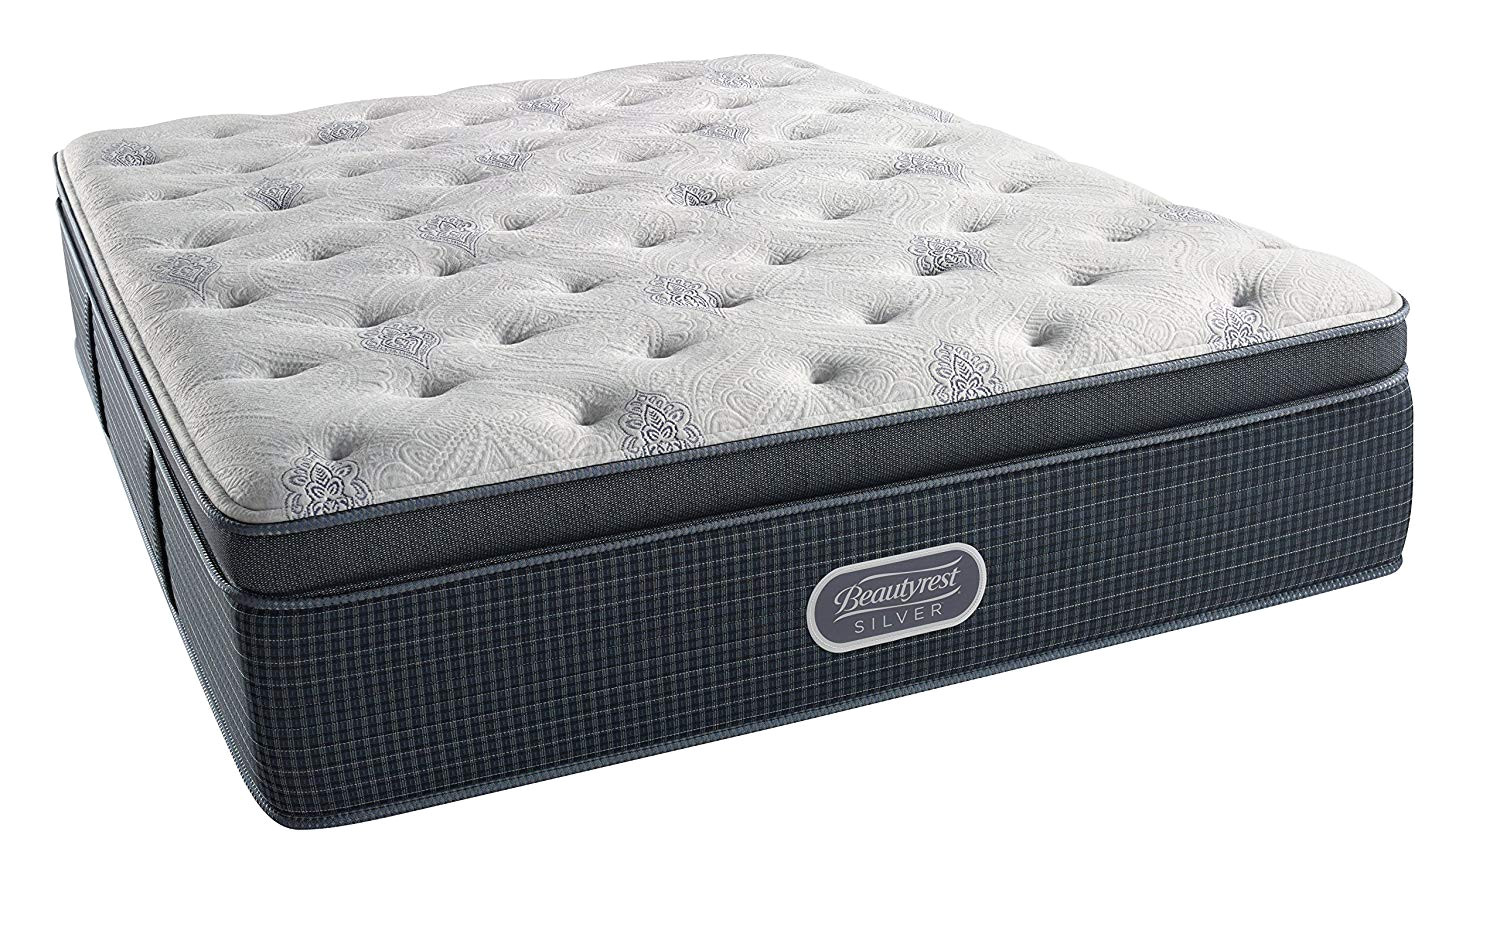 cushion firm vs plush mattress